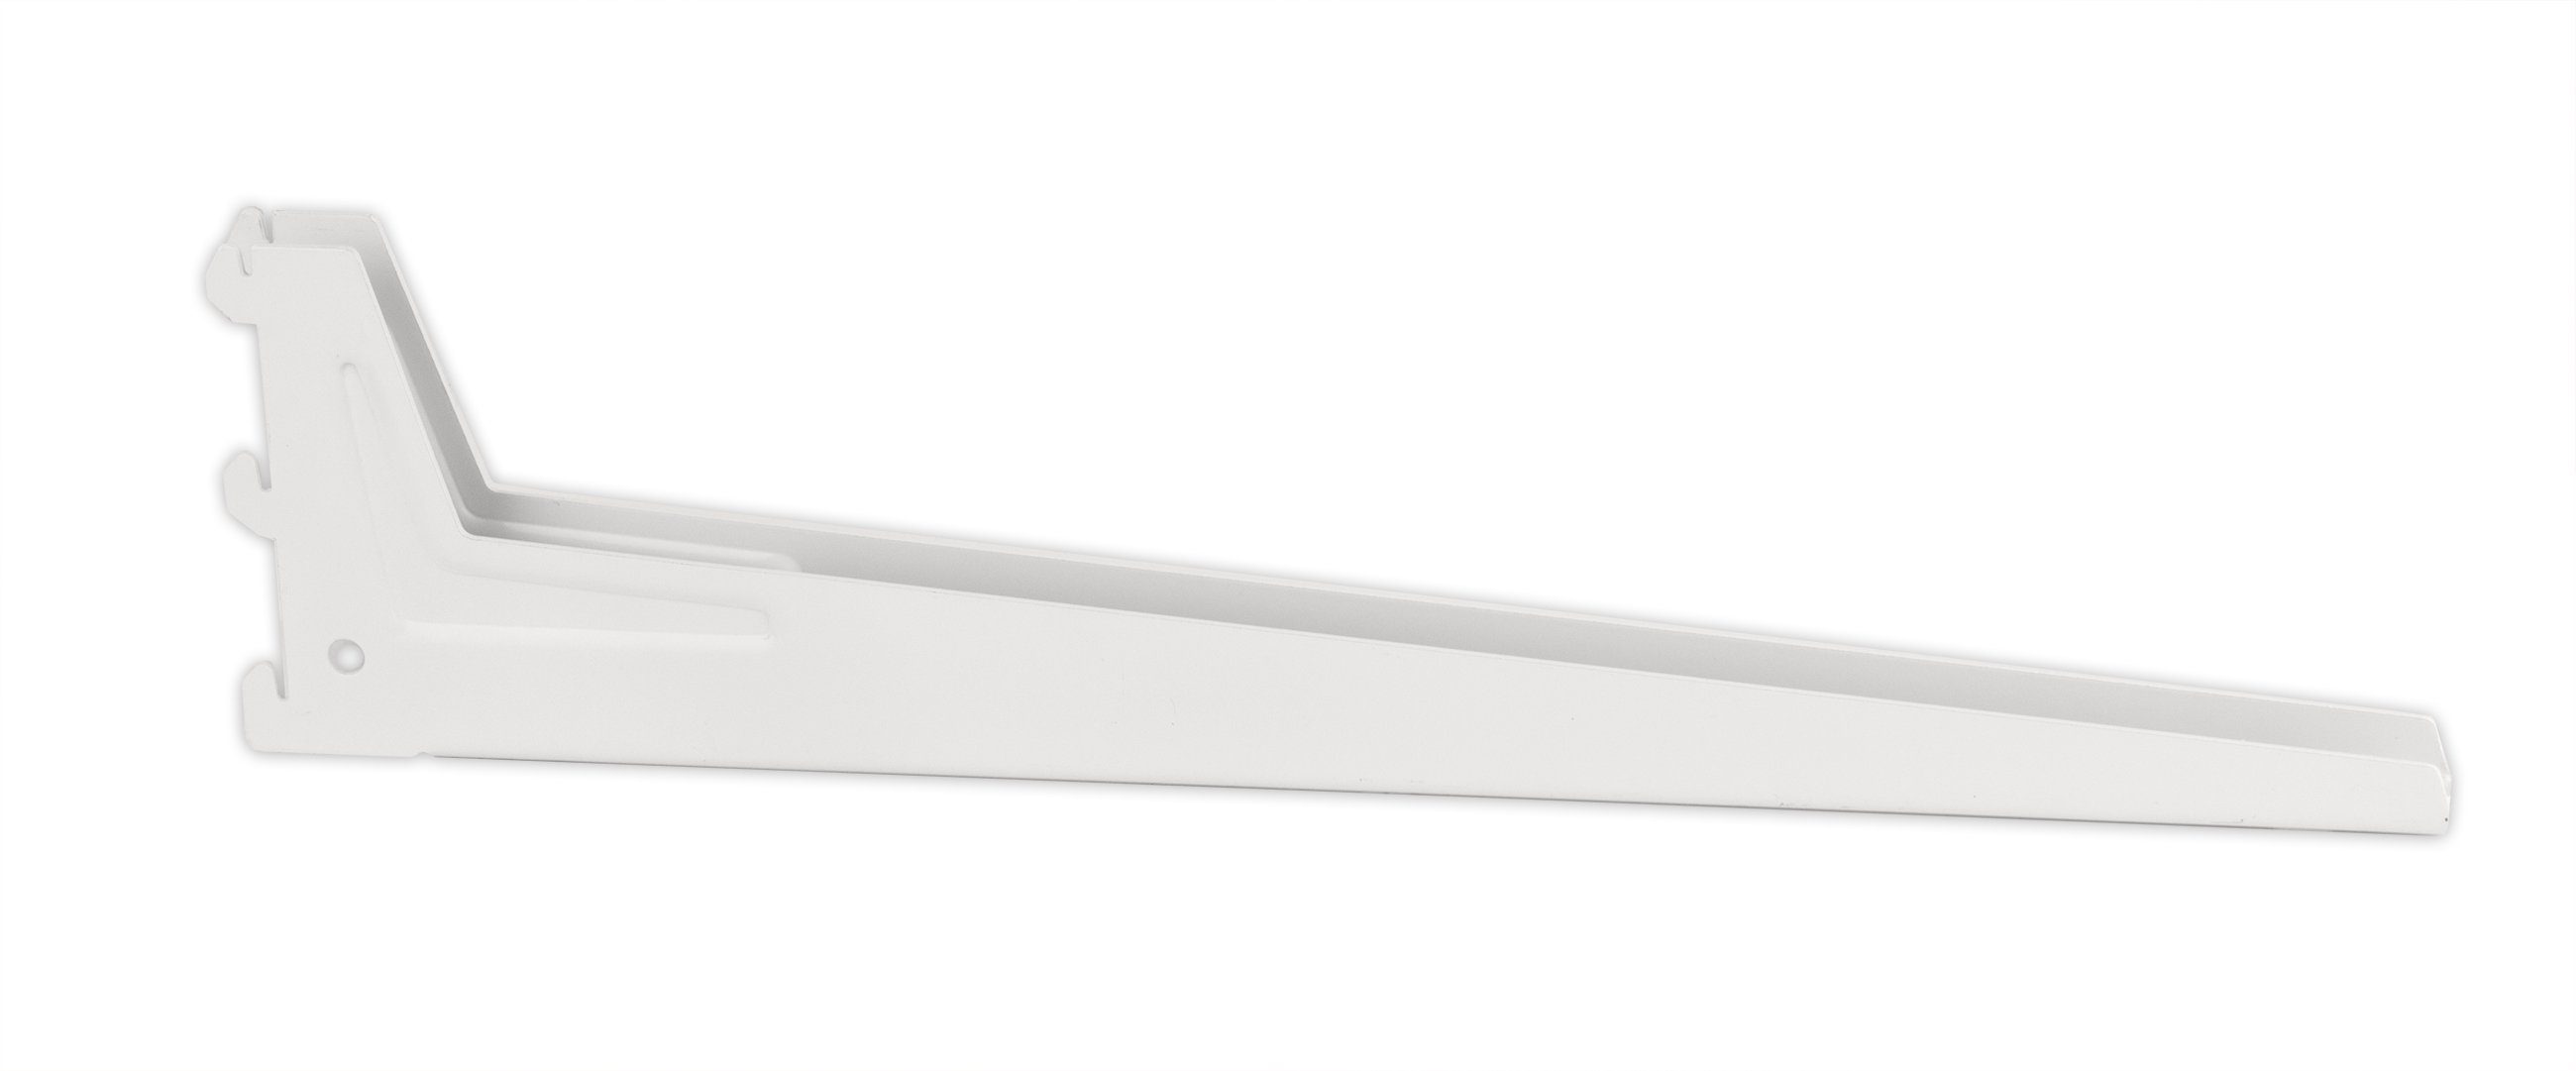 BigDean Wandregalhalter Winkel-Träger 18x5 cm weiß Regalträger Passend zu Wandschienen